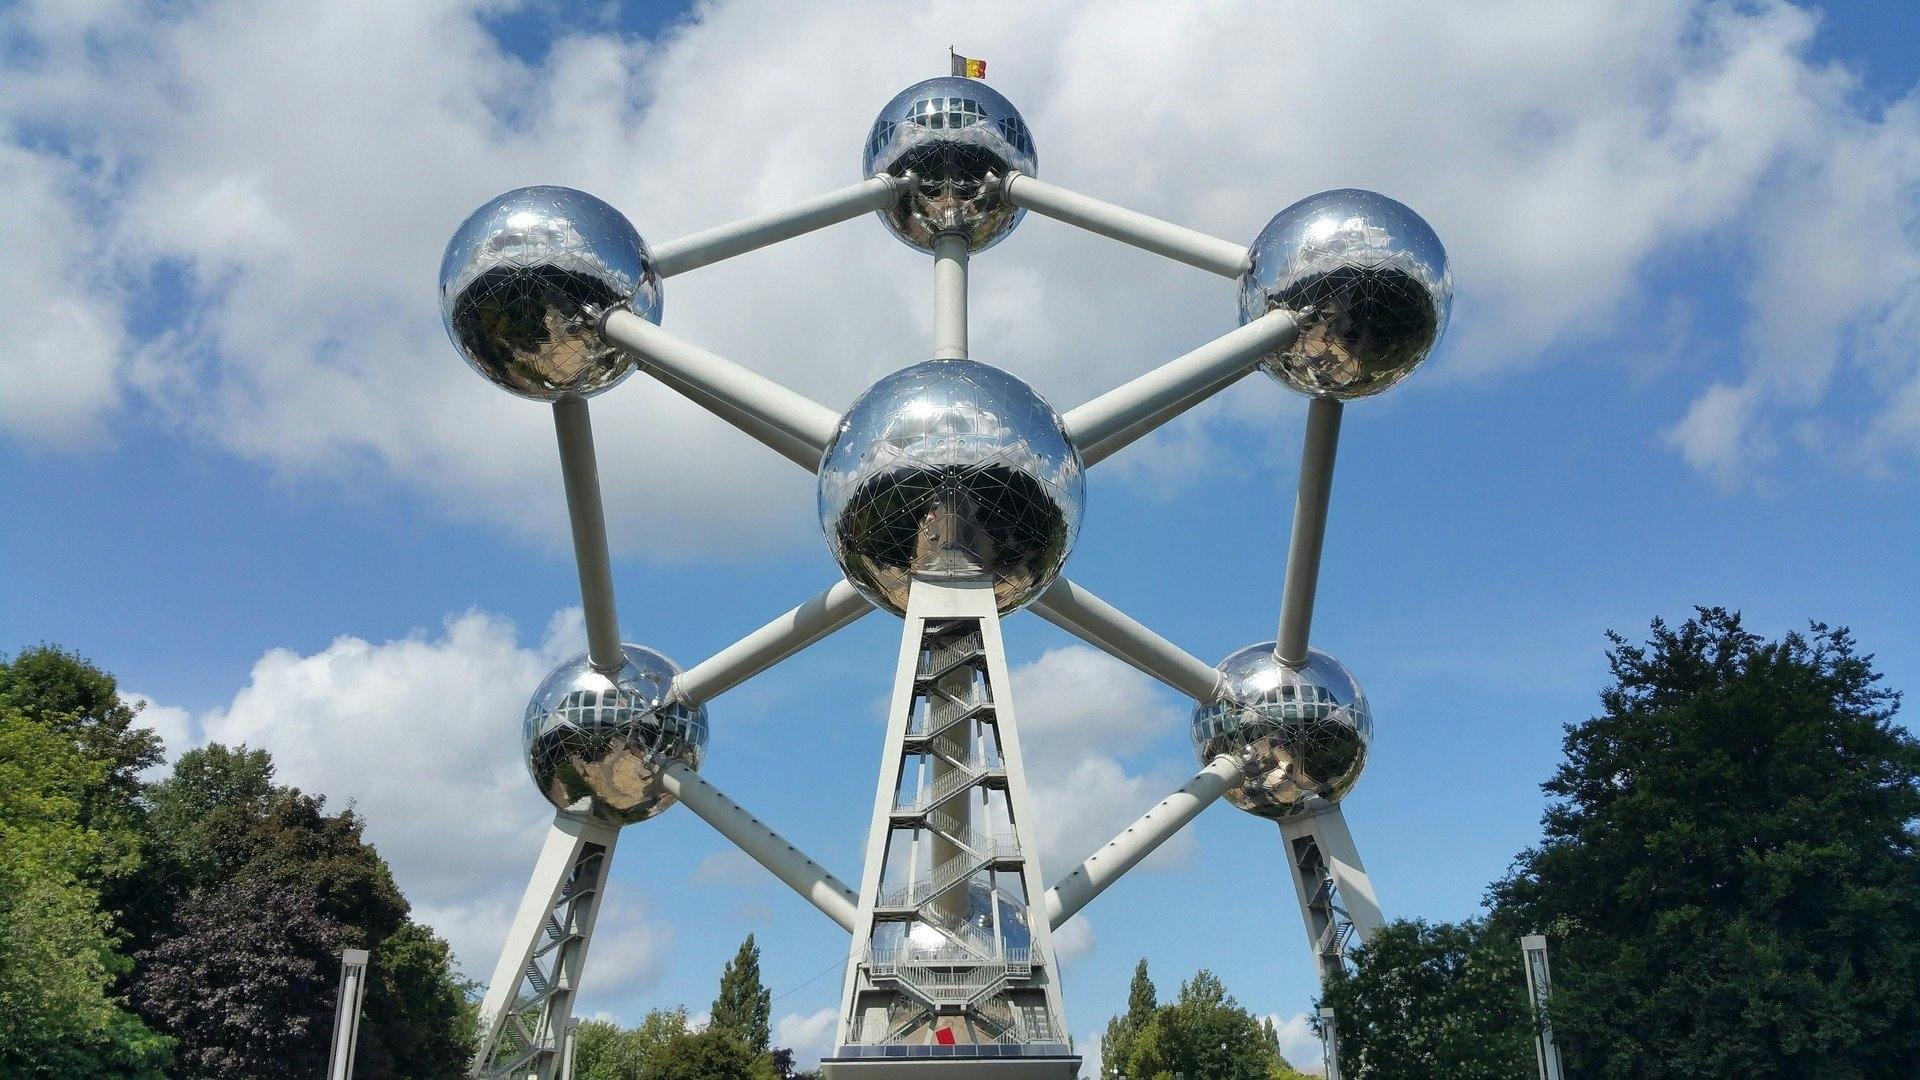 Passeio turístico em Bruxelas com parada no Atomium